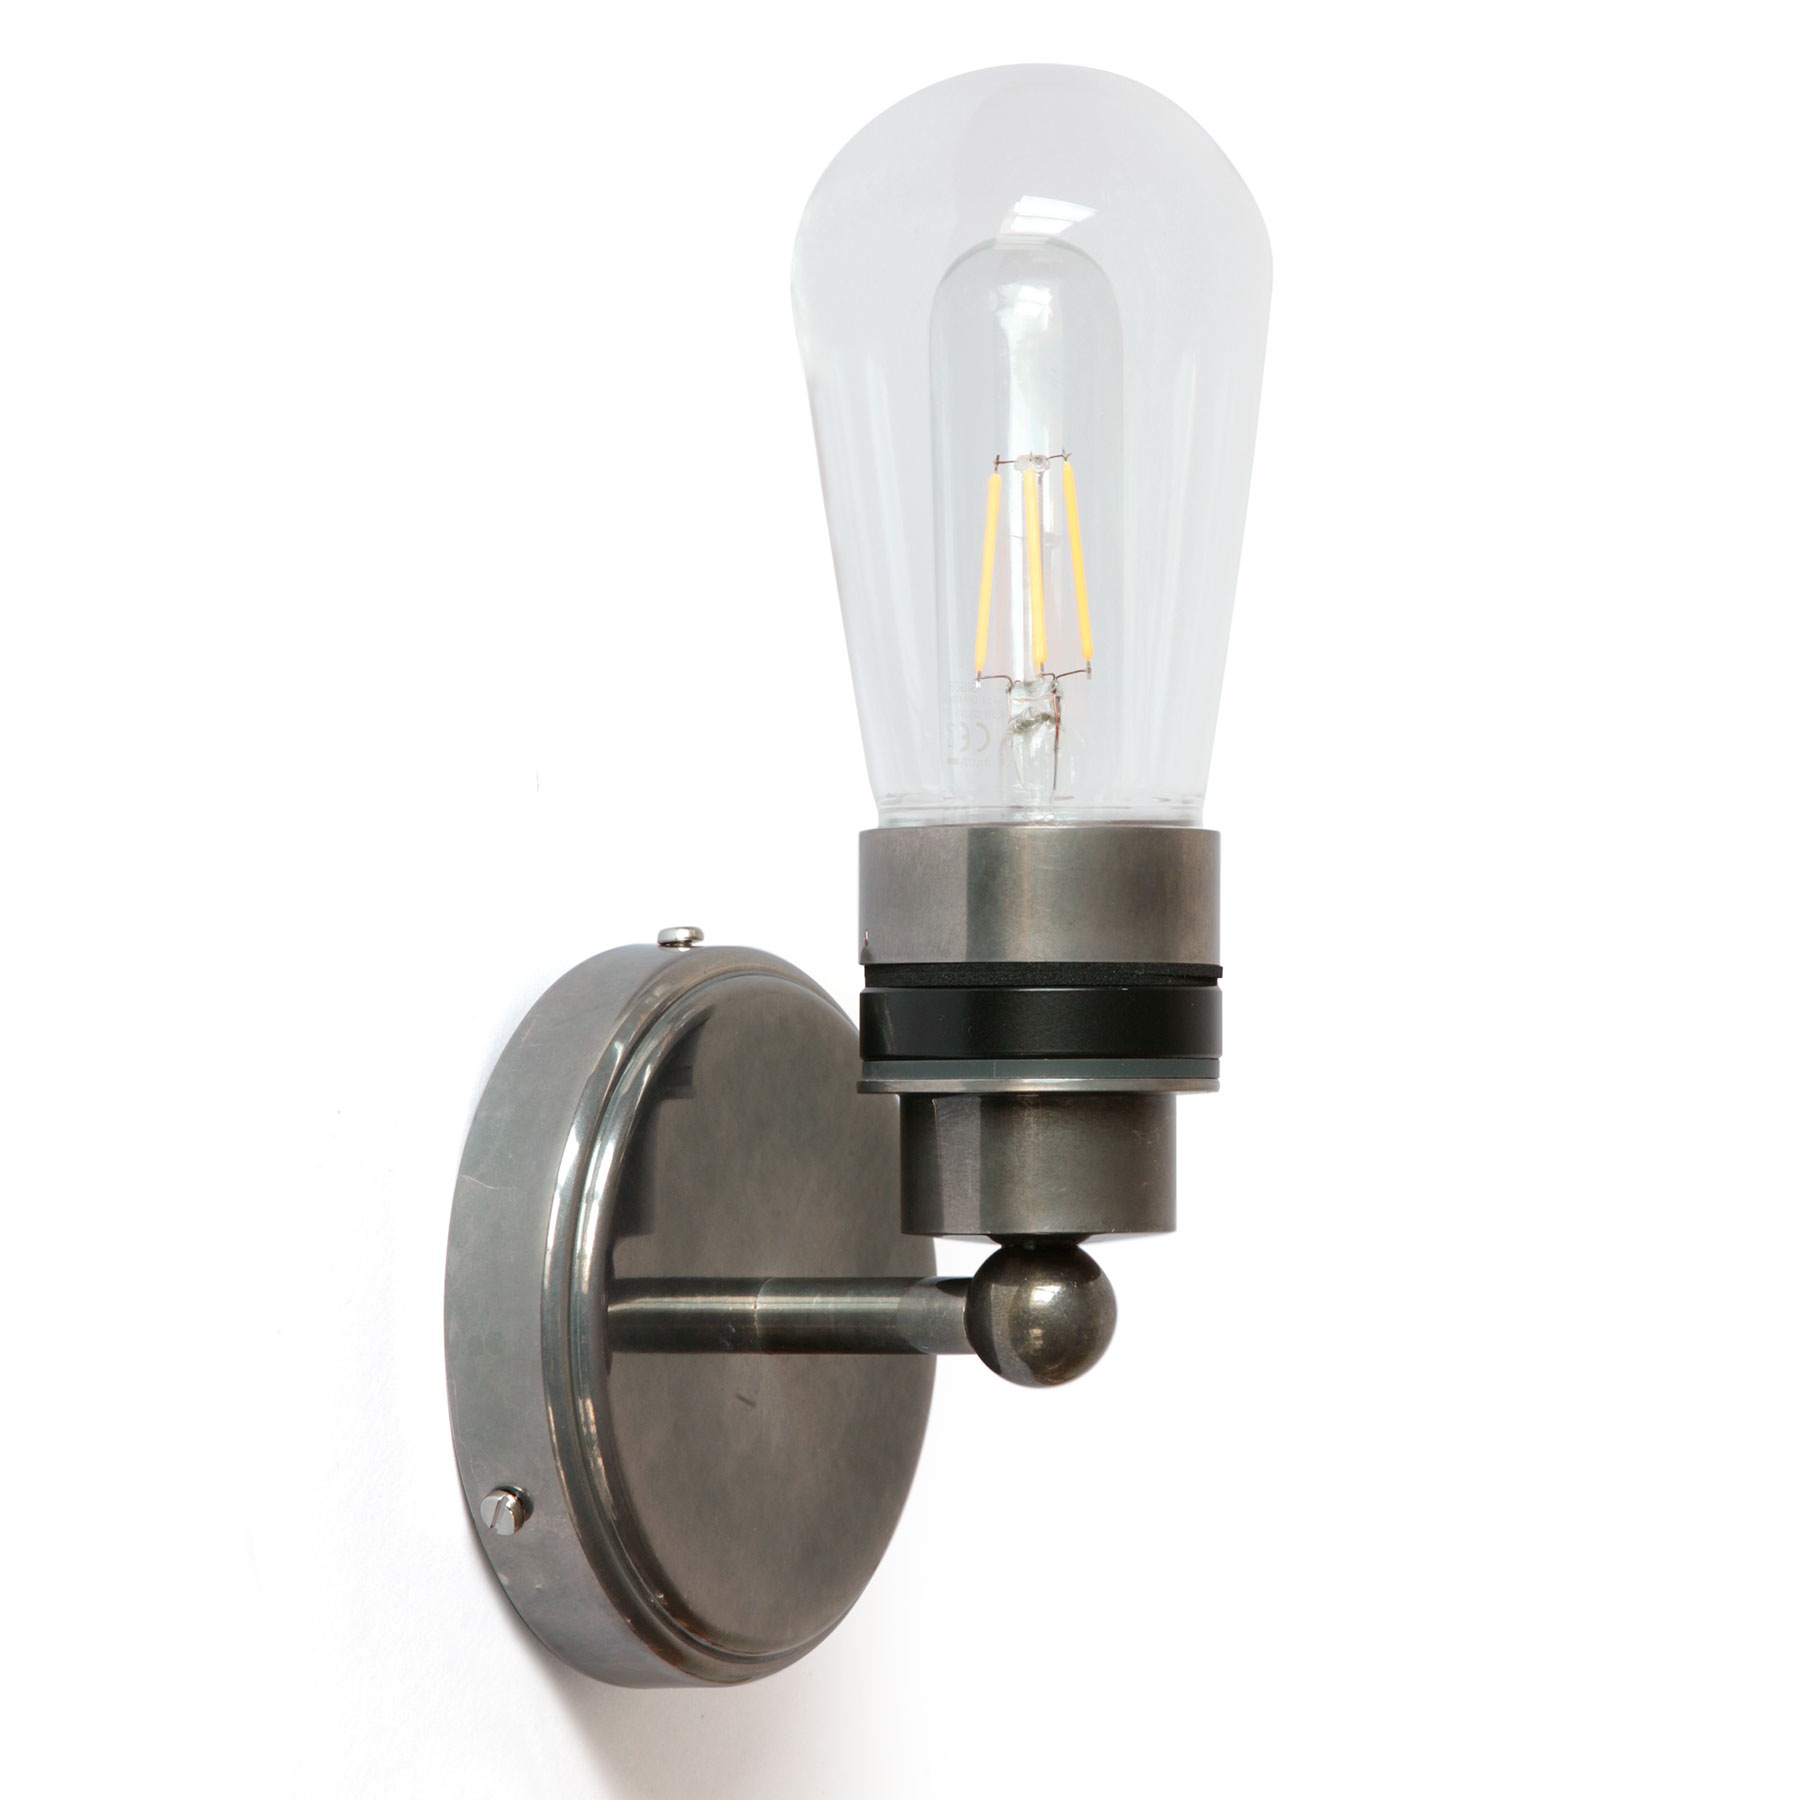 Schlichte Badezimmer-Wandlampe mit Glaskolben, IP65: Schlichte Wandlampe mit Glaskolben, mit IP65 für das Bad geeignet, Messing alt-silbern patiniert